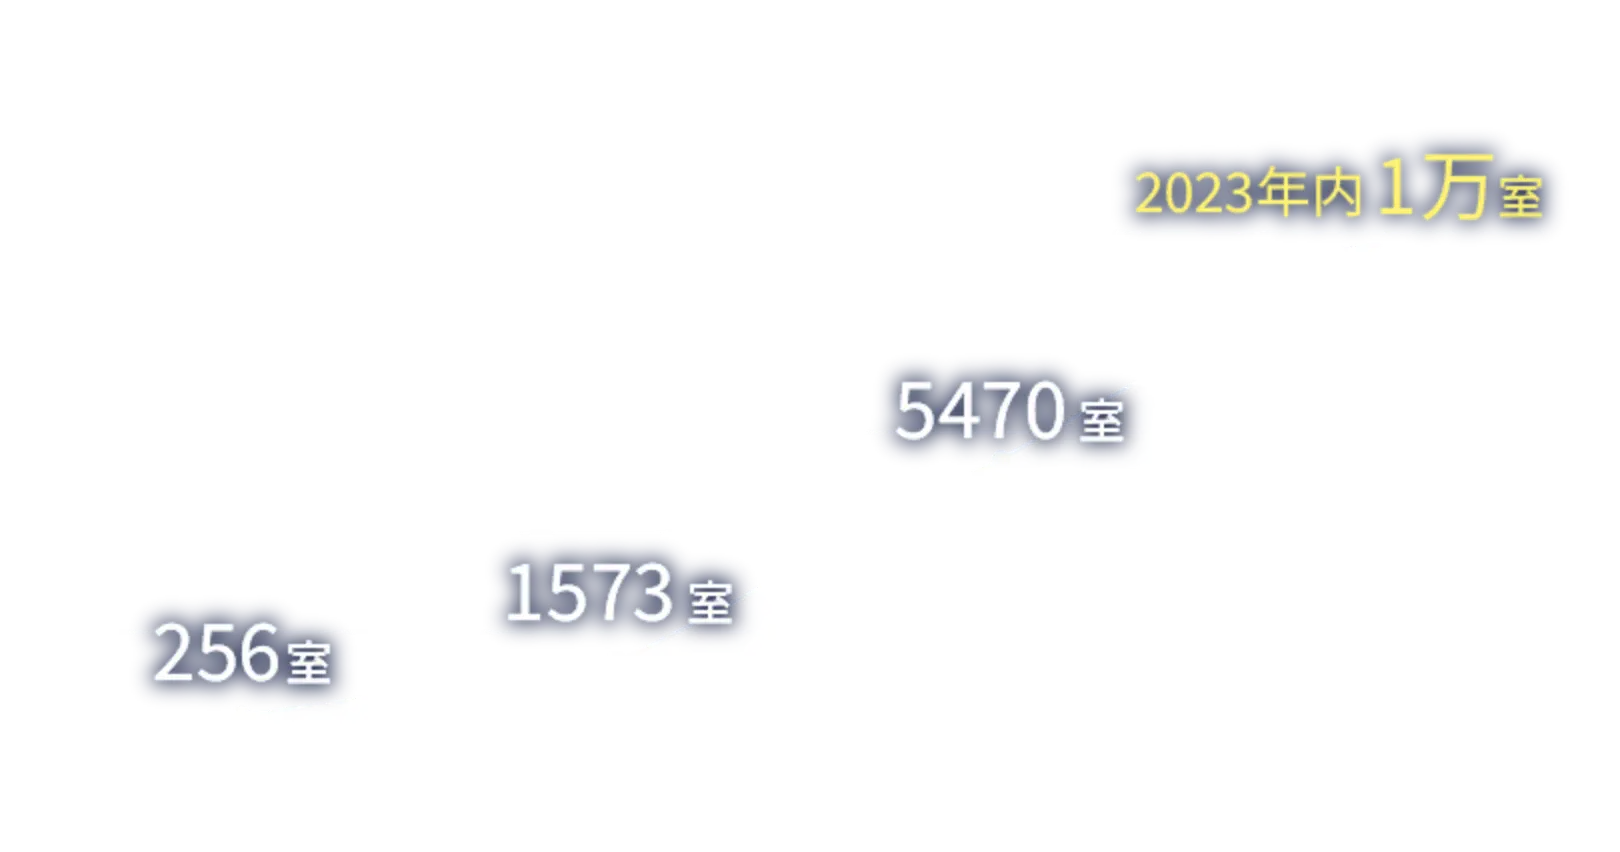 運用トランクルームと室数と予想 2023年内1万室